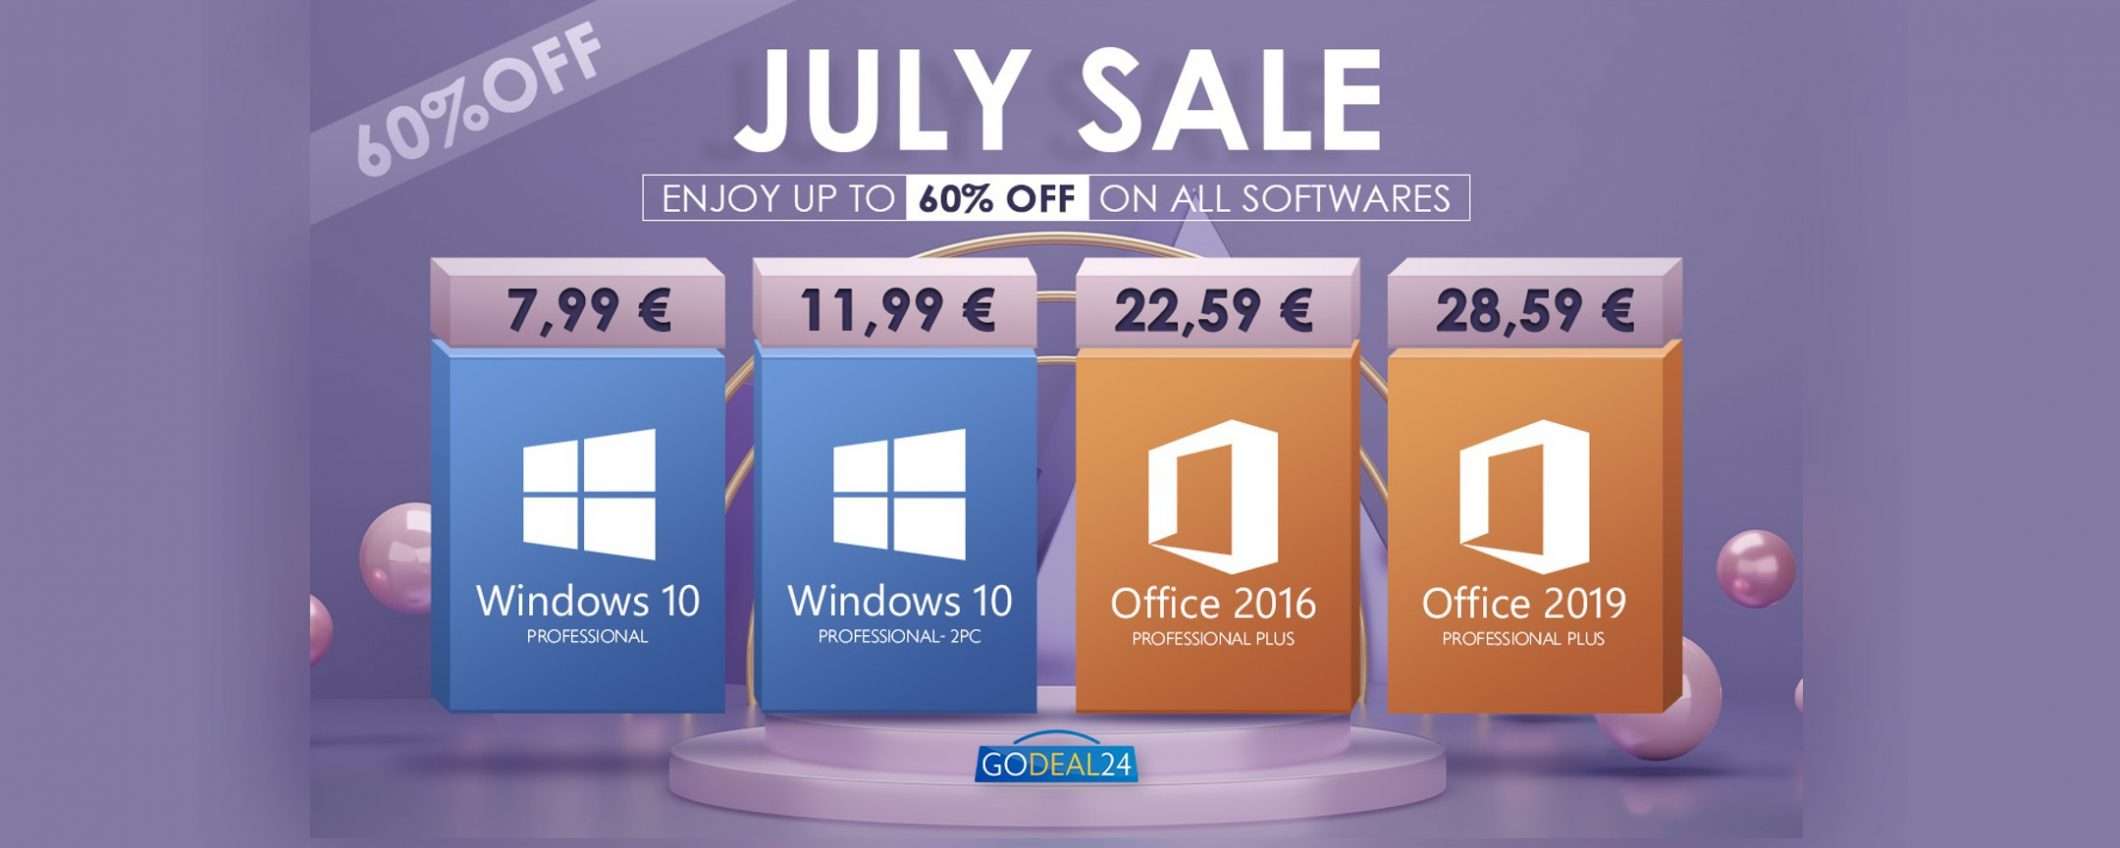 Saldi di luglio: Windows 10 Pro a soli 7,99€ e tanto altro!